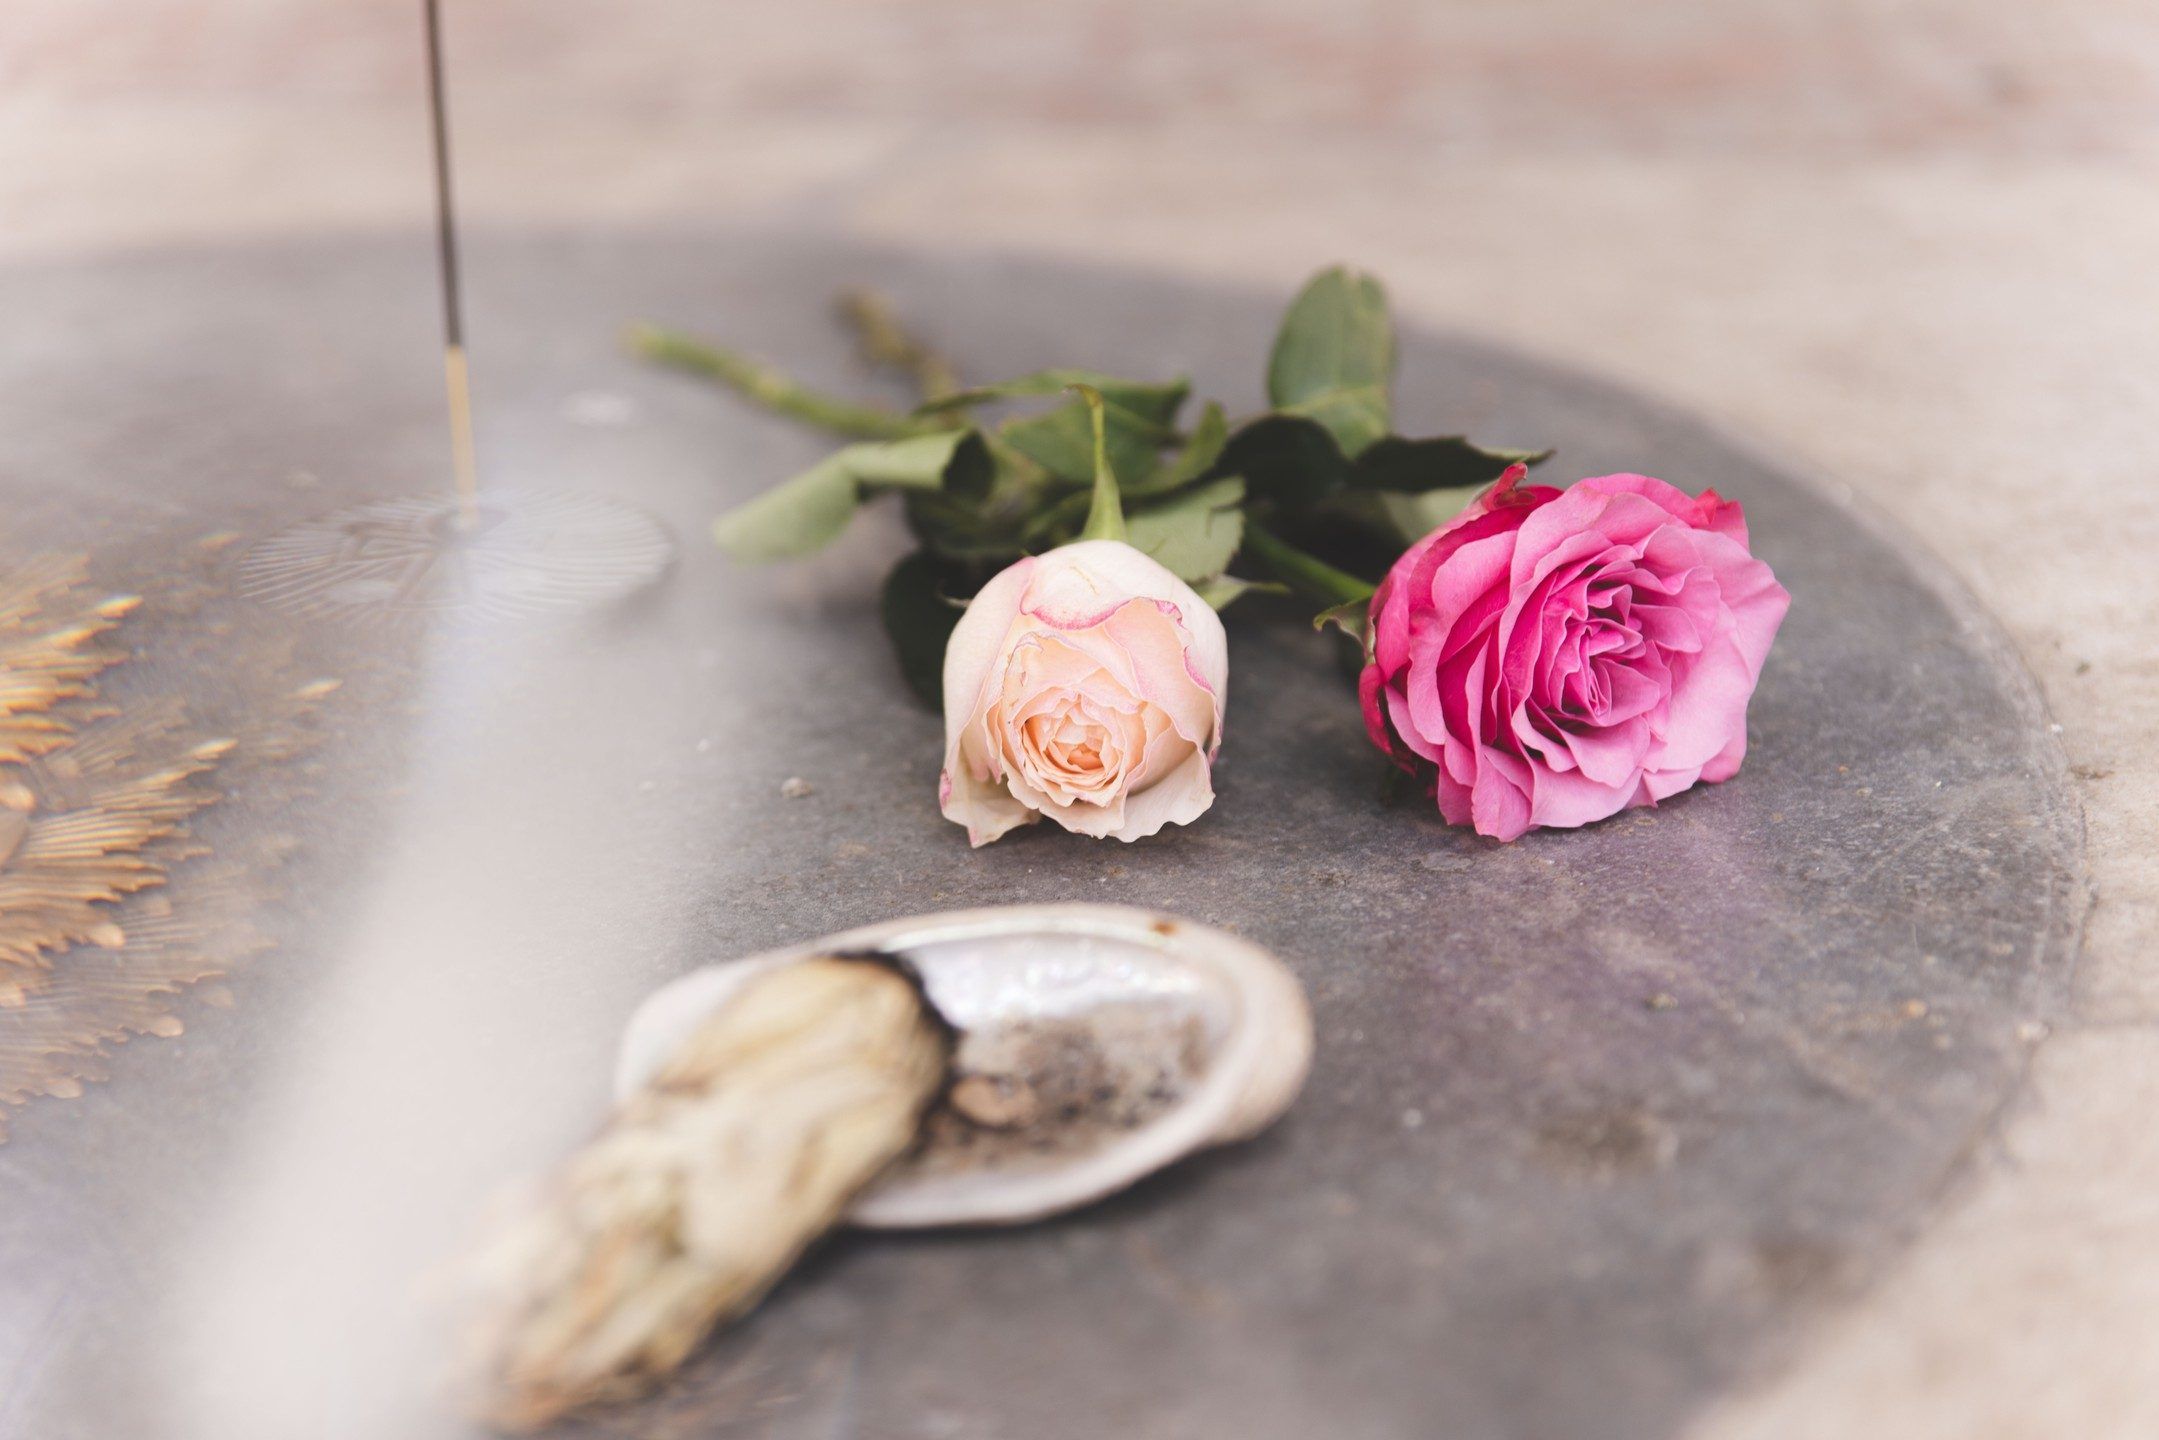 Cérémonie de la rose: Un rituel sacré de renaissance et de connexion profonde. Cette cérémonie est une expérience immersive qui célèbre la beauté et la puissance de la Rose, symbole de l'amour divin et de la transformation spirituelle.